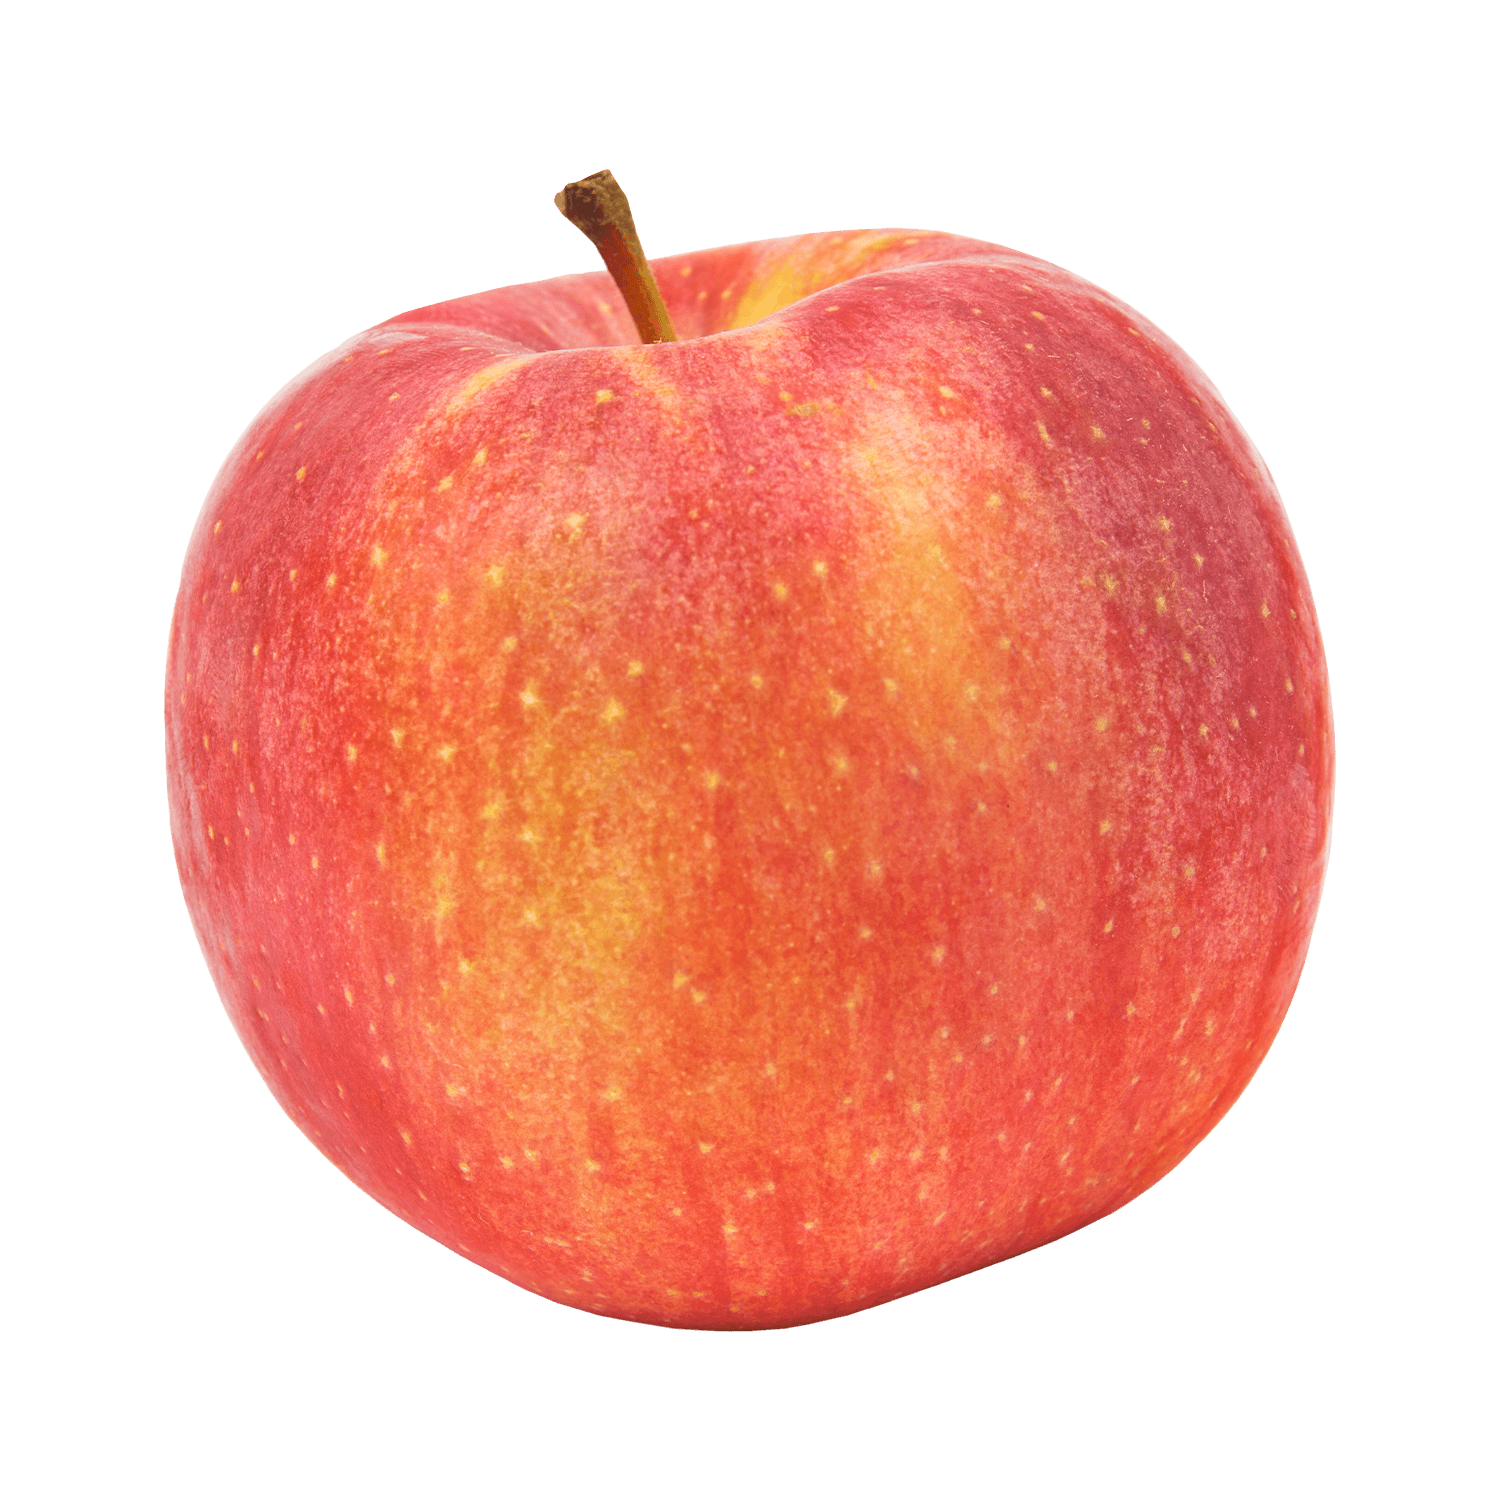 Save on Giant Apples Honeycrisp Order Online Delivery